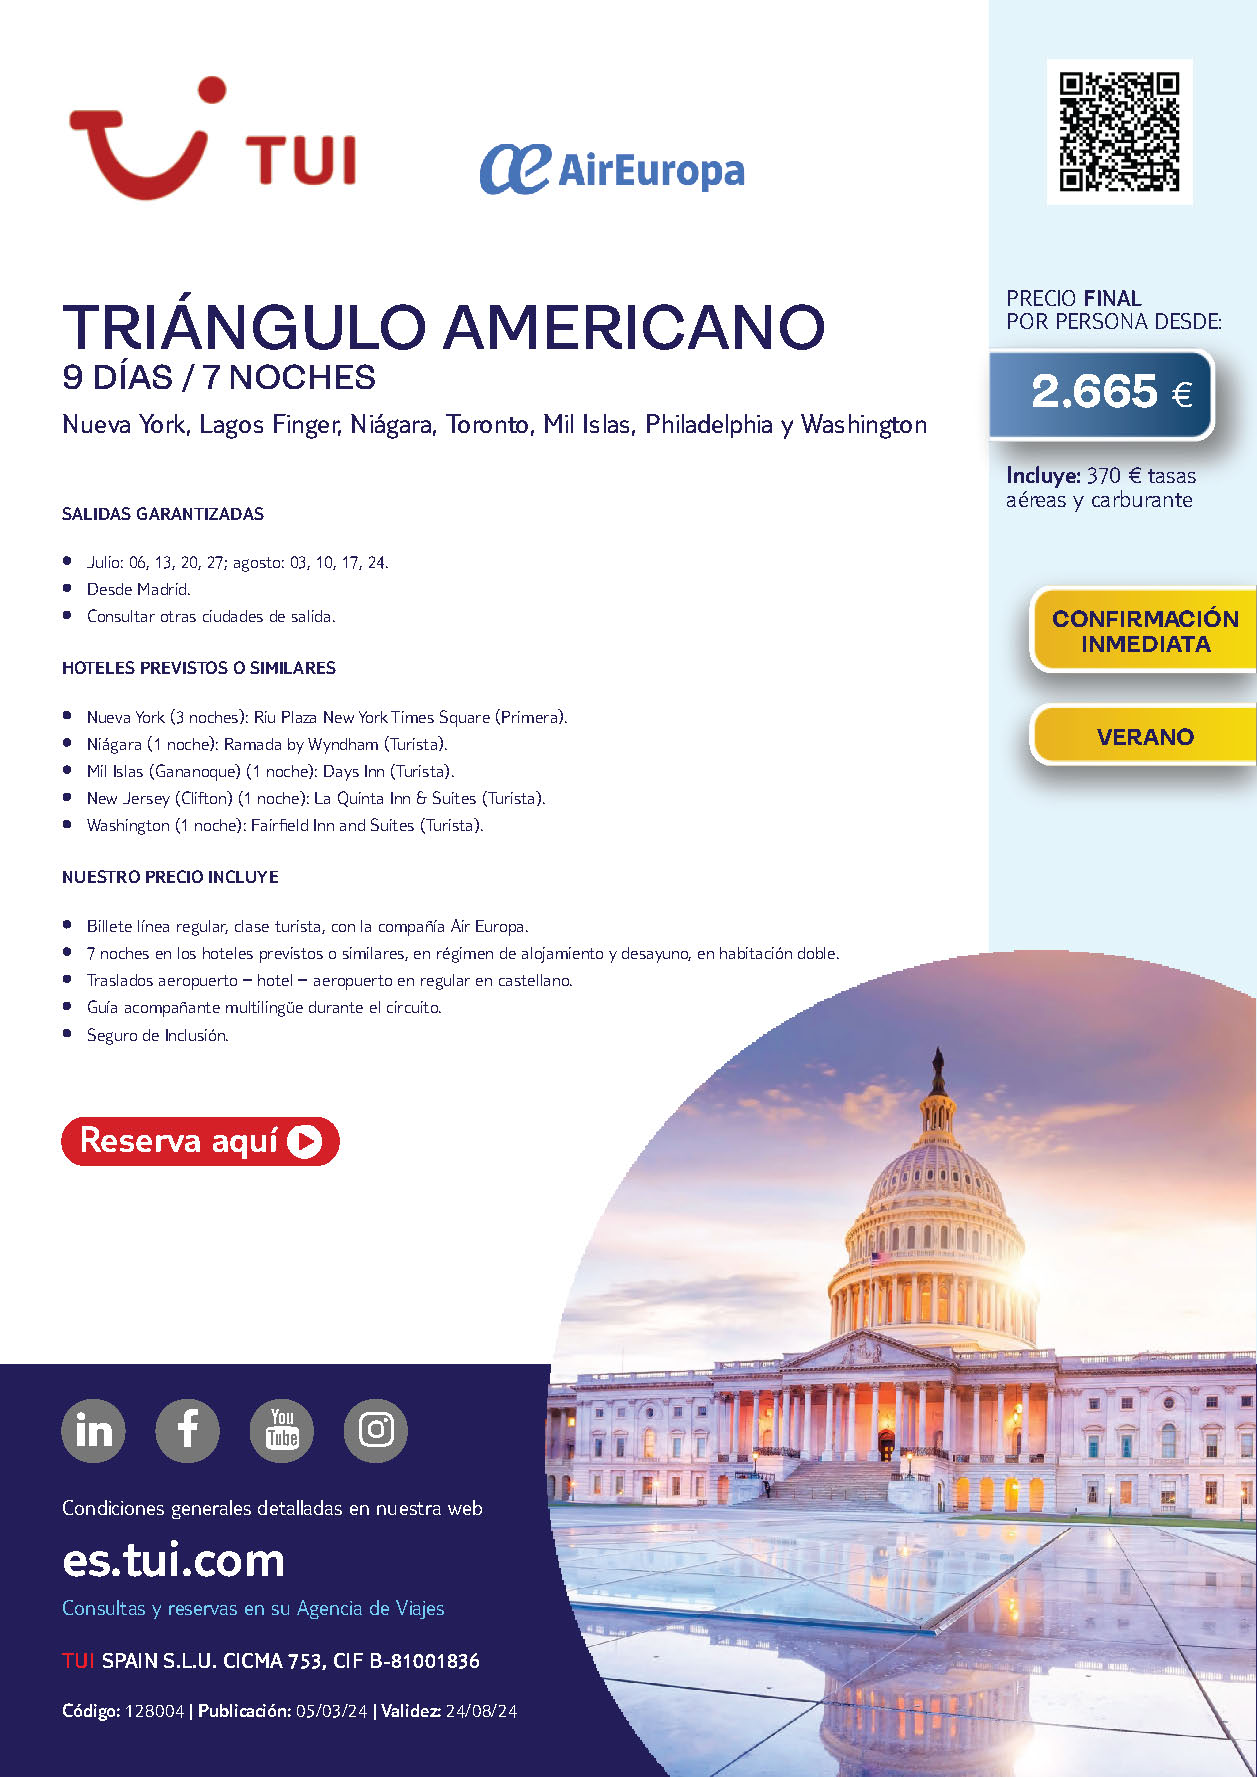 Oferta TUI Estados Unidos Circuito Triangulo Americano 9 dias salidas Julio y Agosto 2024 en vuelo de Air Europa directo desde Madrid